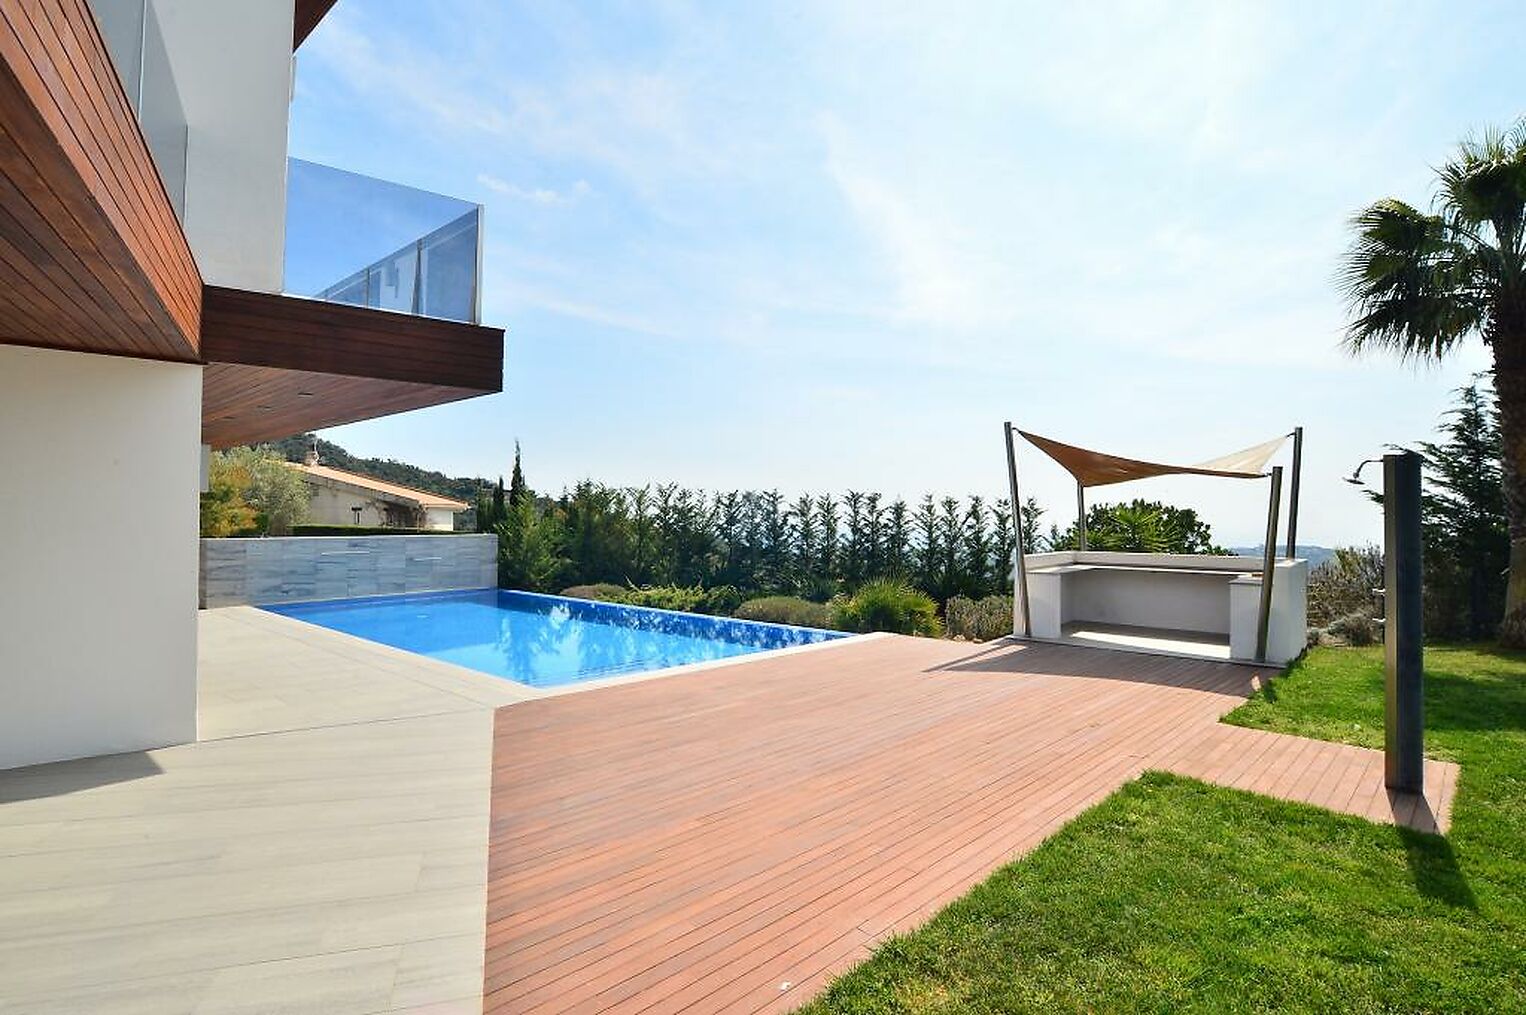 Propiedad estilo moderno con piscina y gran jardín situada en Playa de Aro.